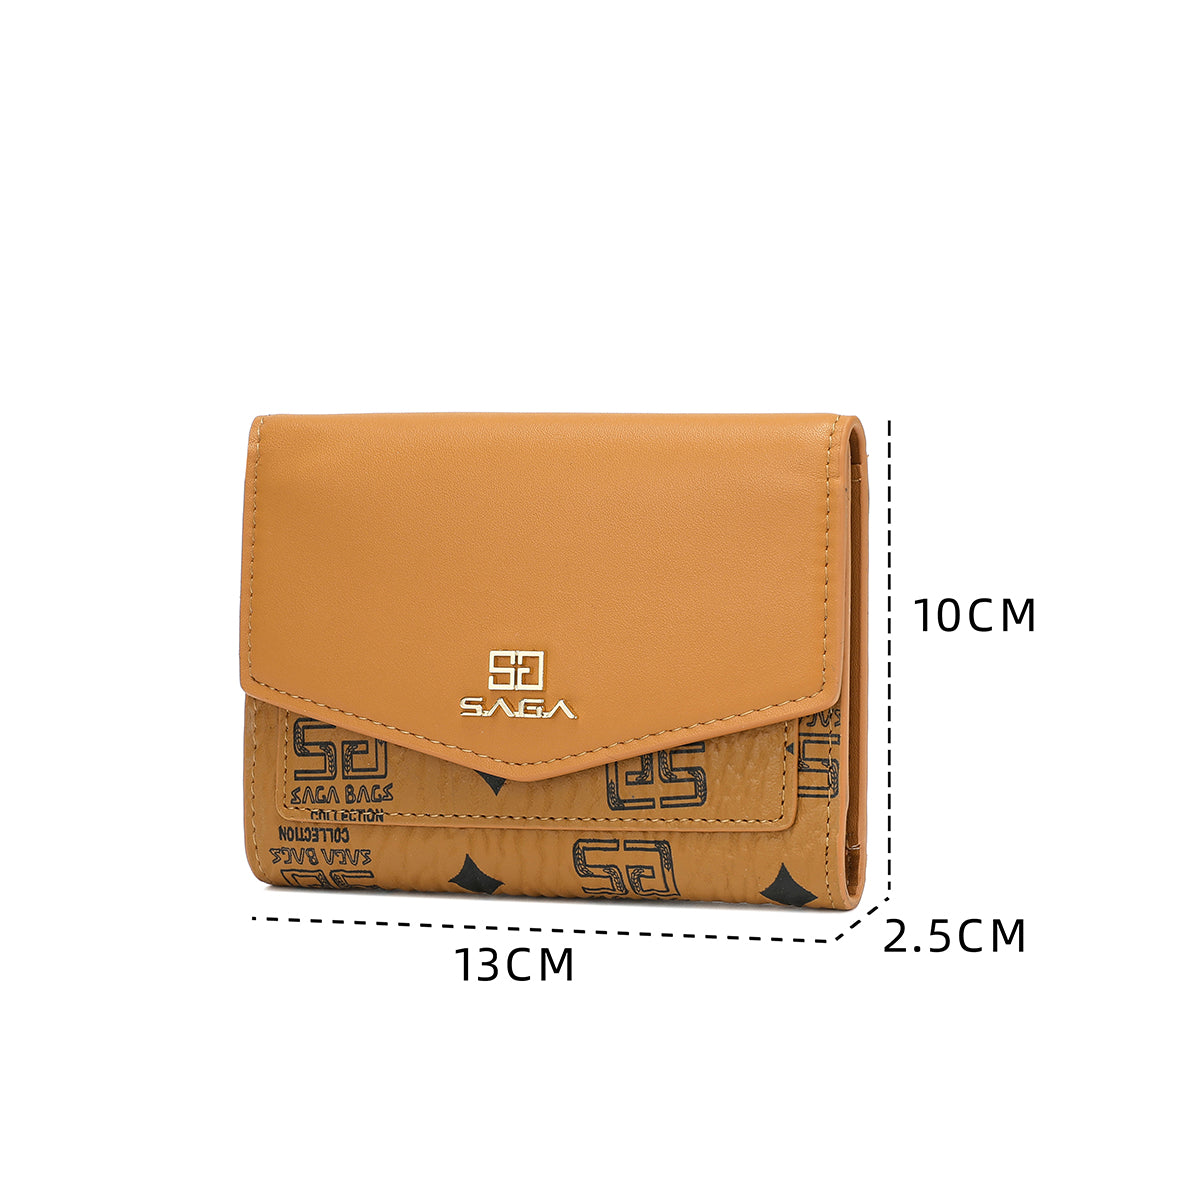 محفظة محفظة SAGA النسائية بأبعاد دقيقة وتصميم جلدي متناسق.